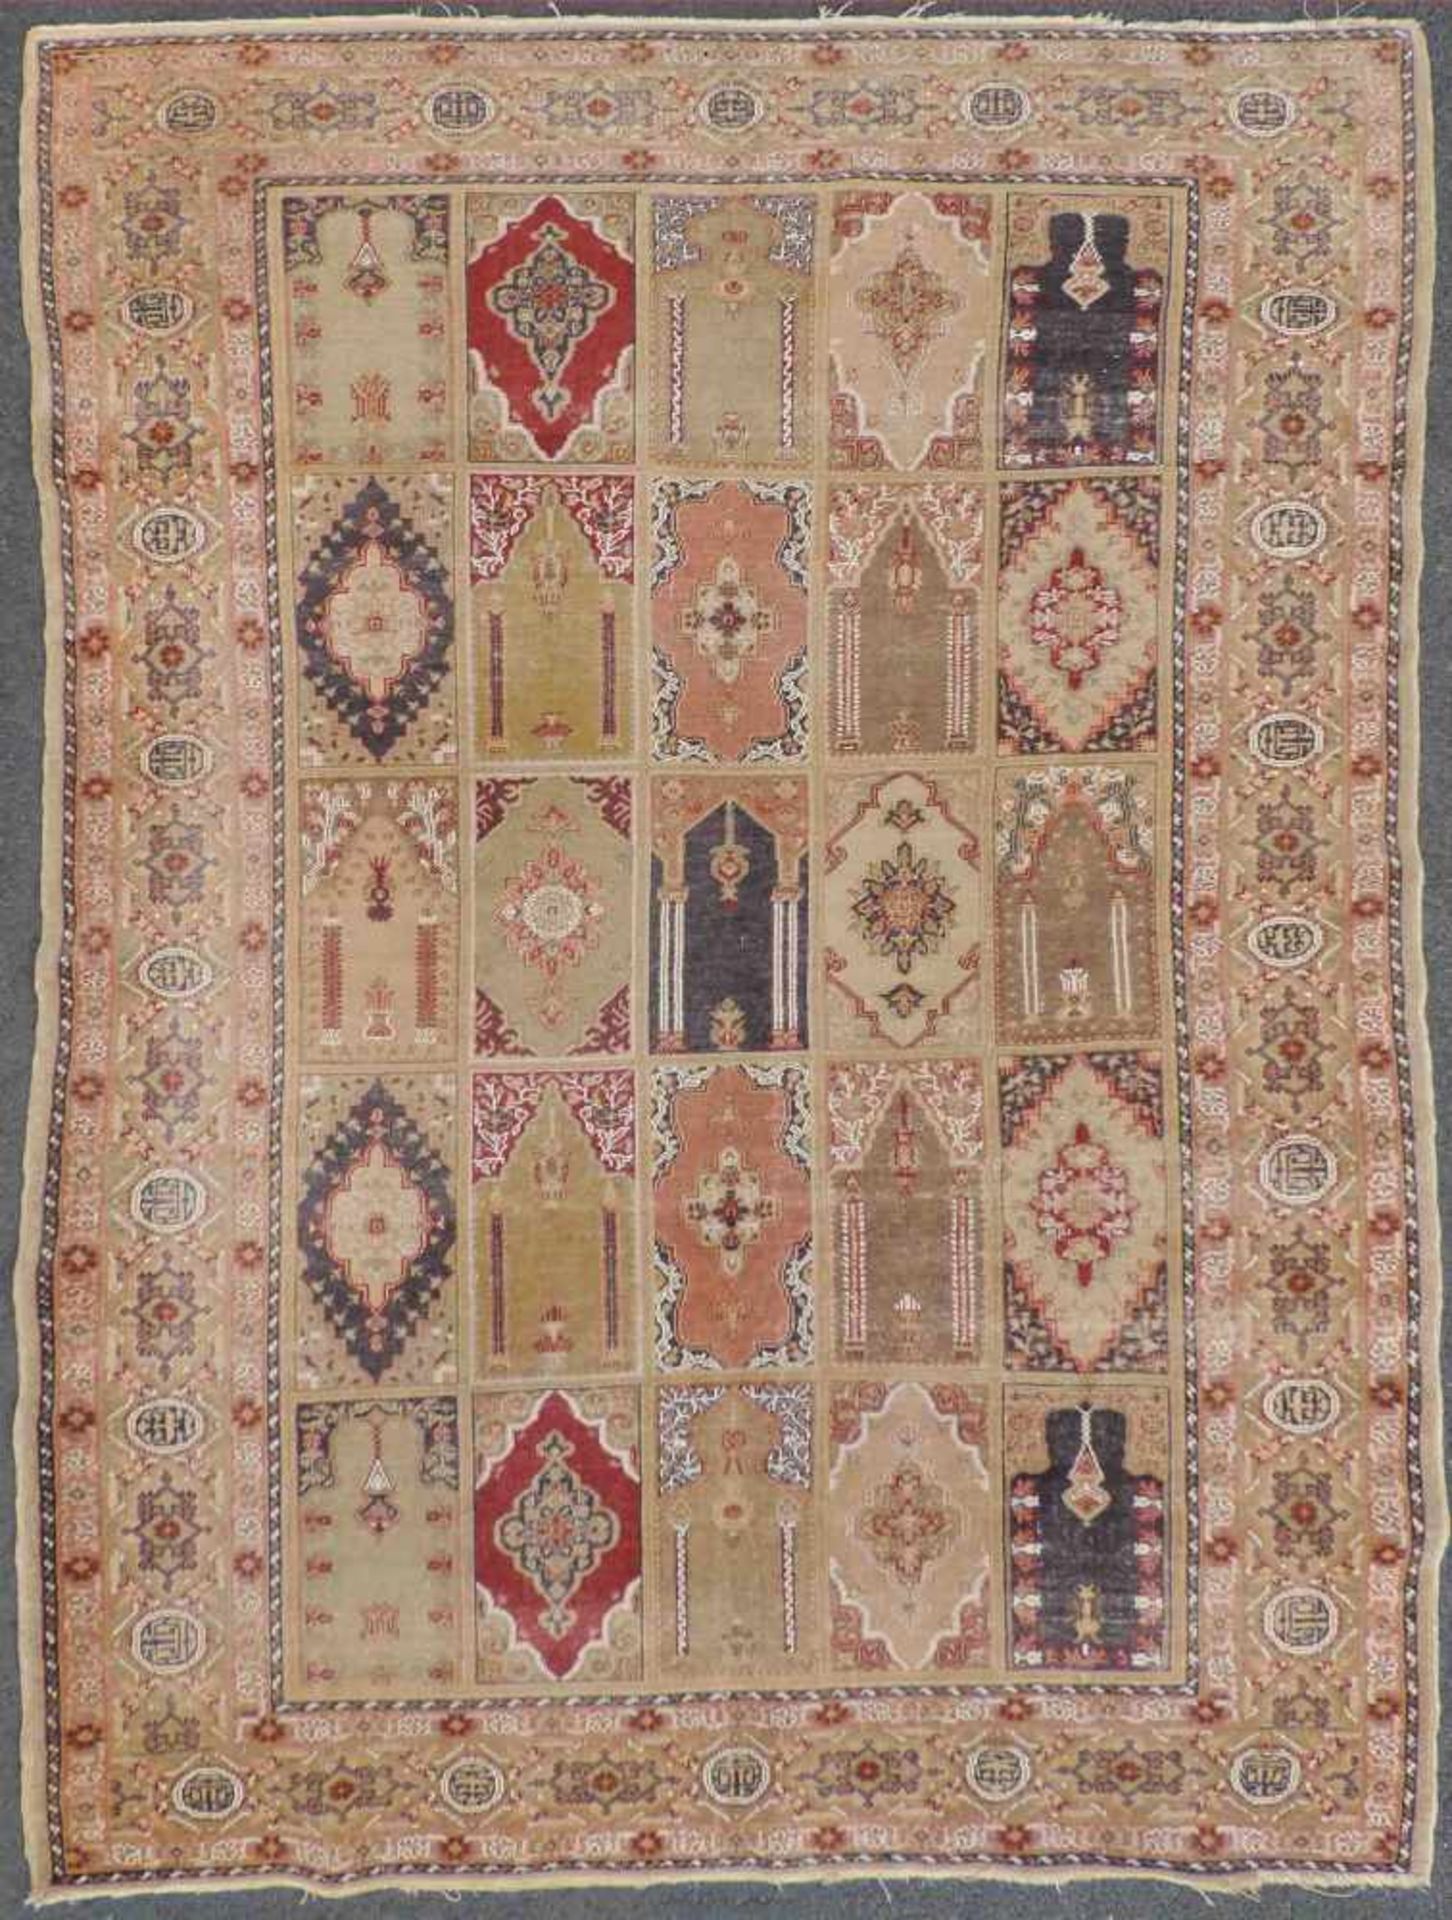 Kayseri Gebetsteppich. Türkei. Antik, um 1900. Feine Knüpfung.188 cm x 126 cm. Handgeknüpft. Wolle